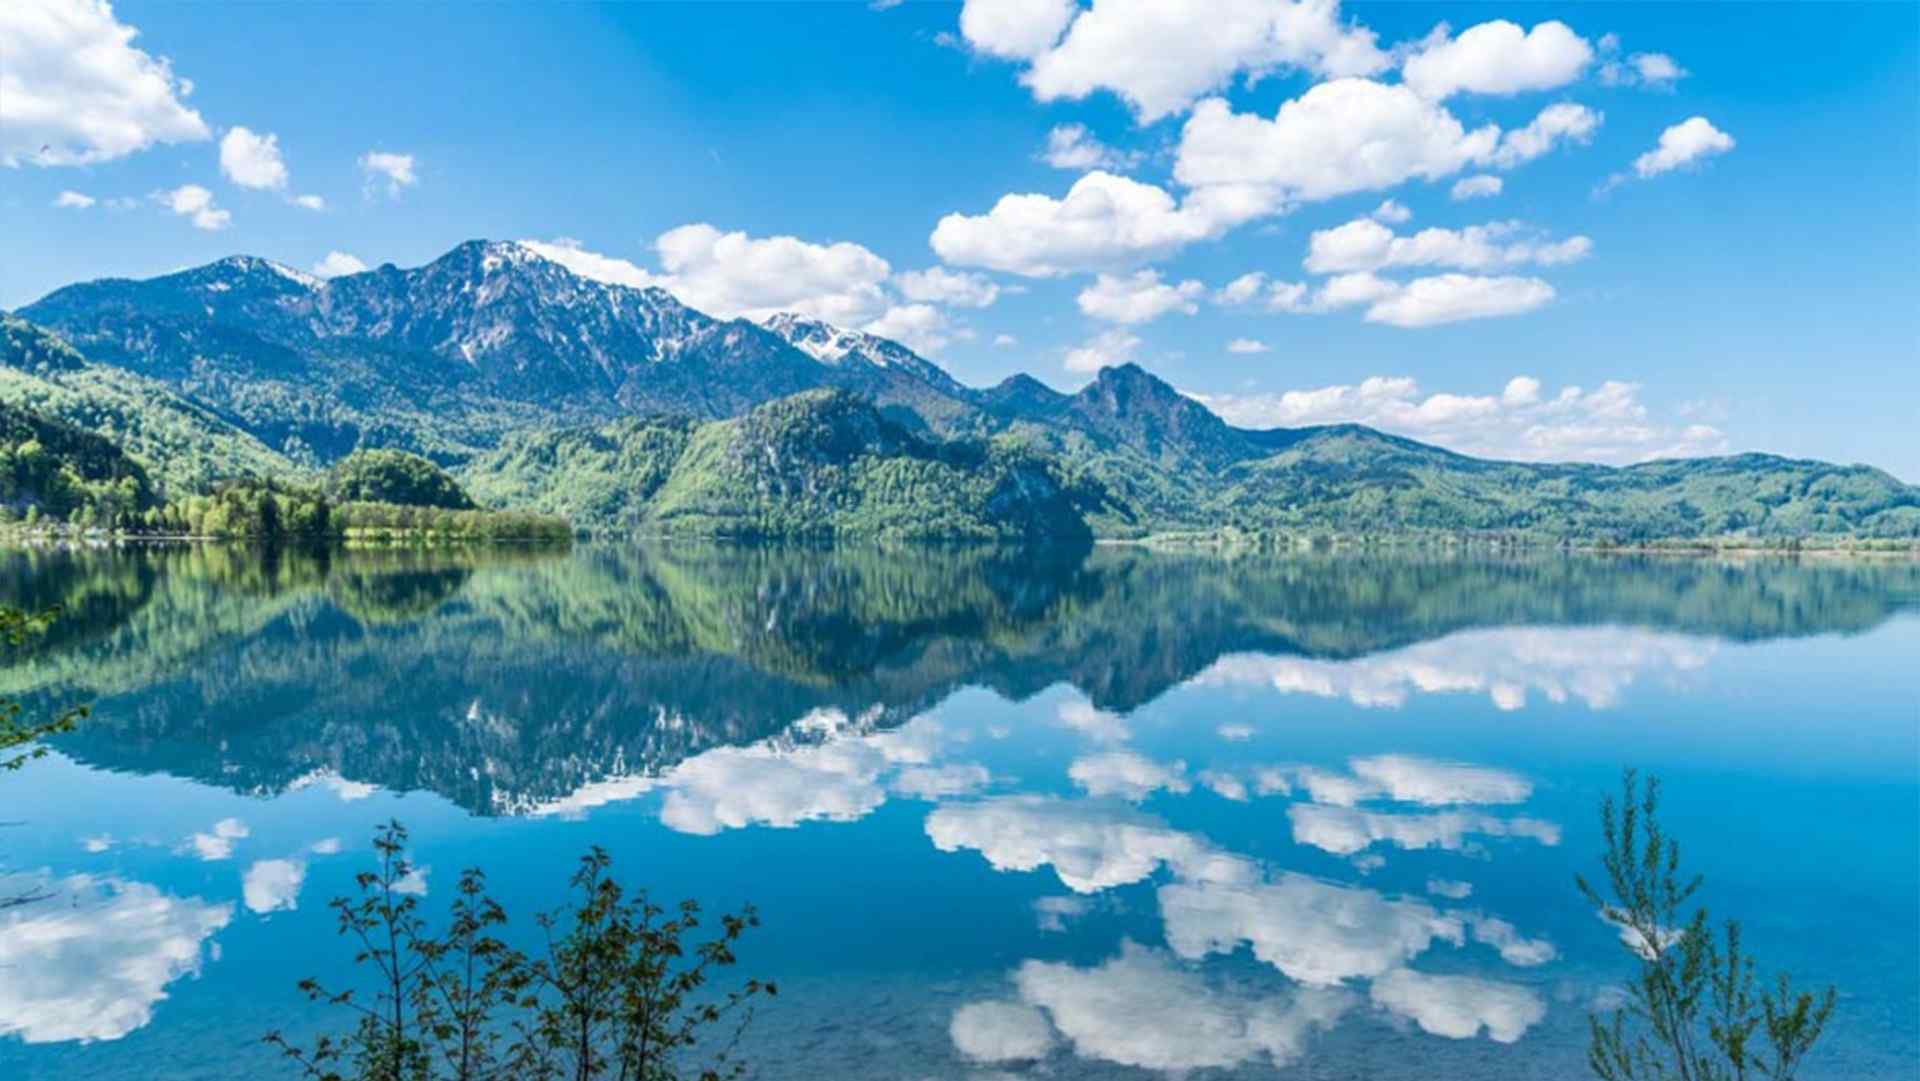 唯美雪山湖蓝天白云万里晴空风景图高清桌面壁纸